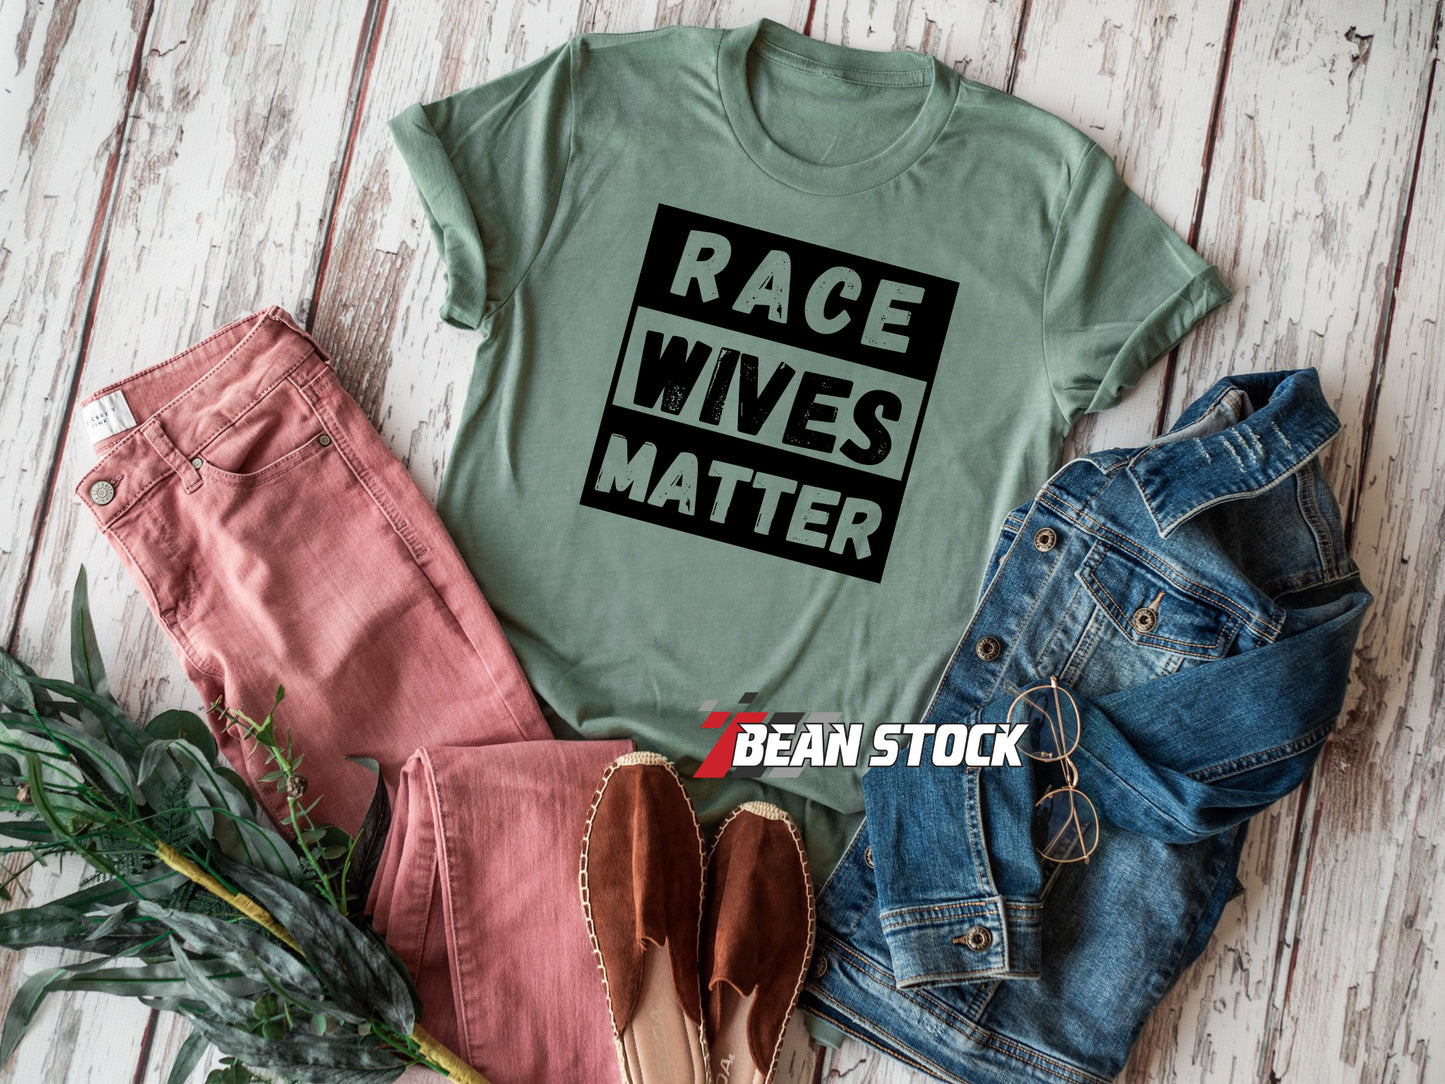 Race Wives Matter